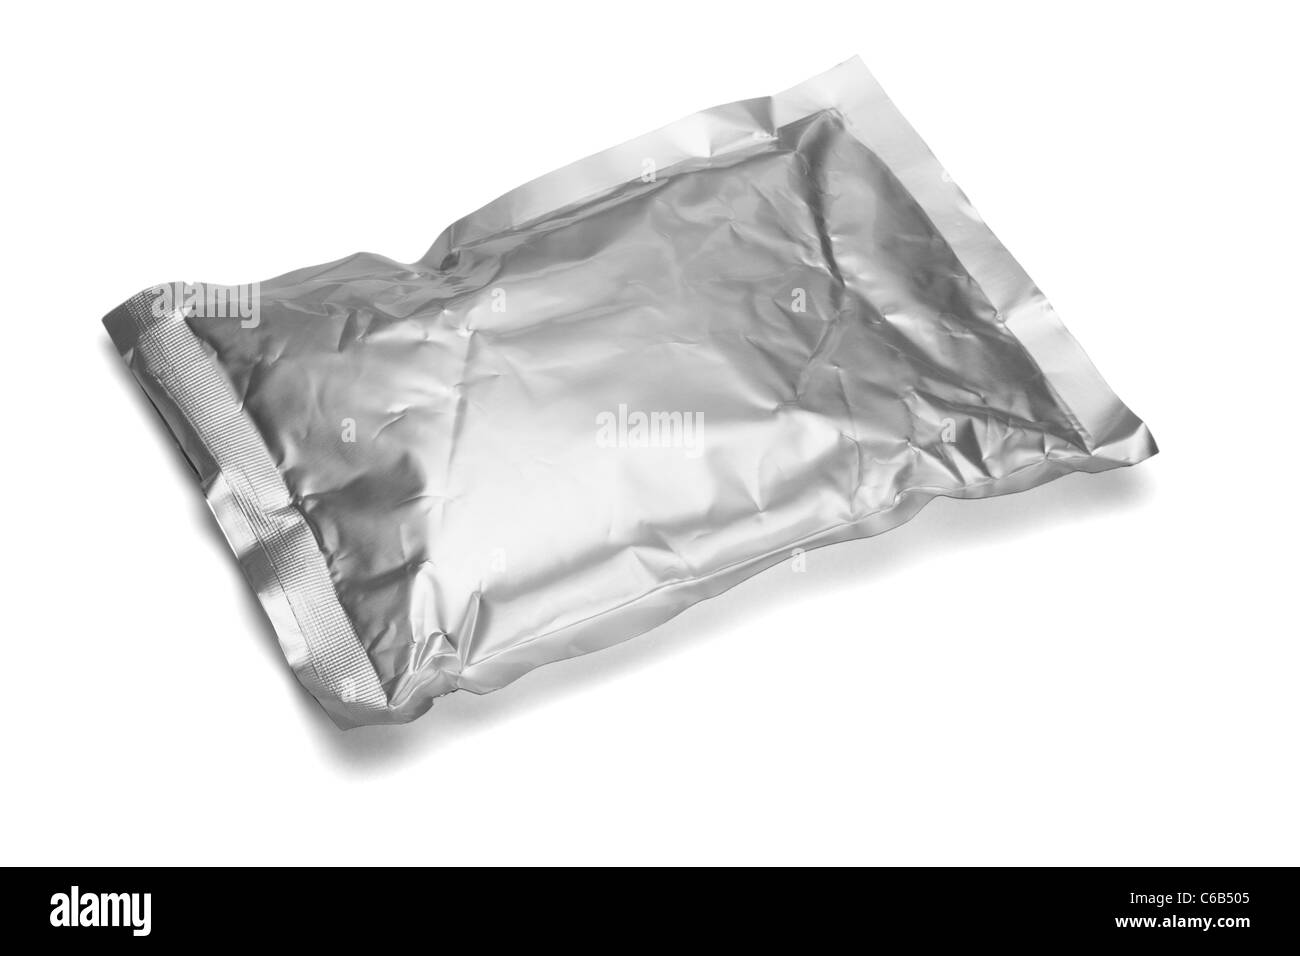 Valise aluminium scellés couché sur fond blanc Banque D'Images